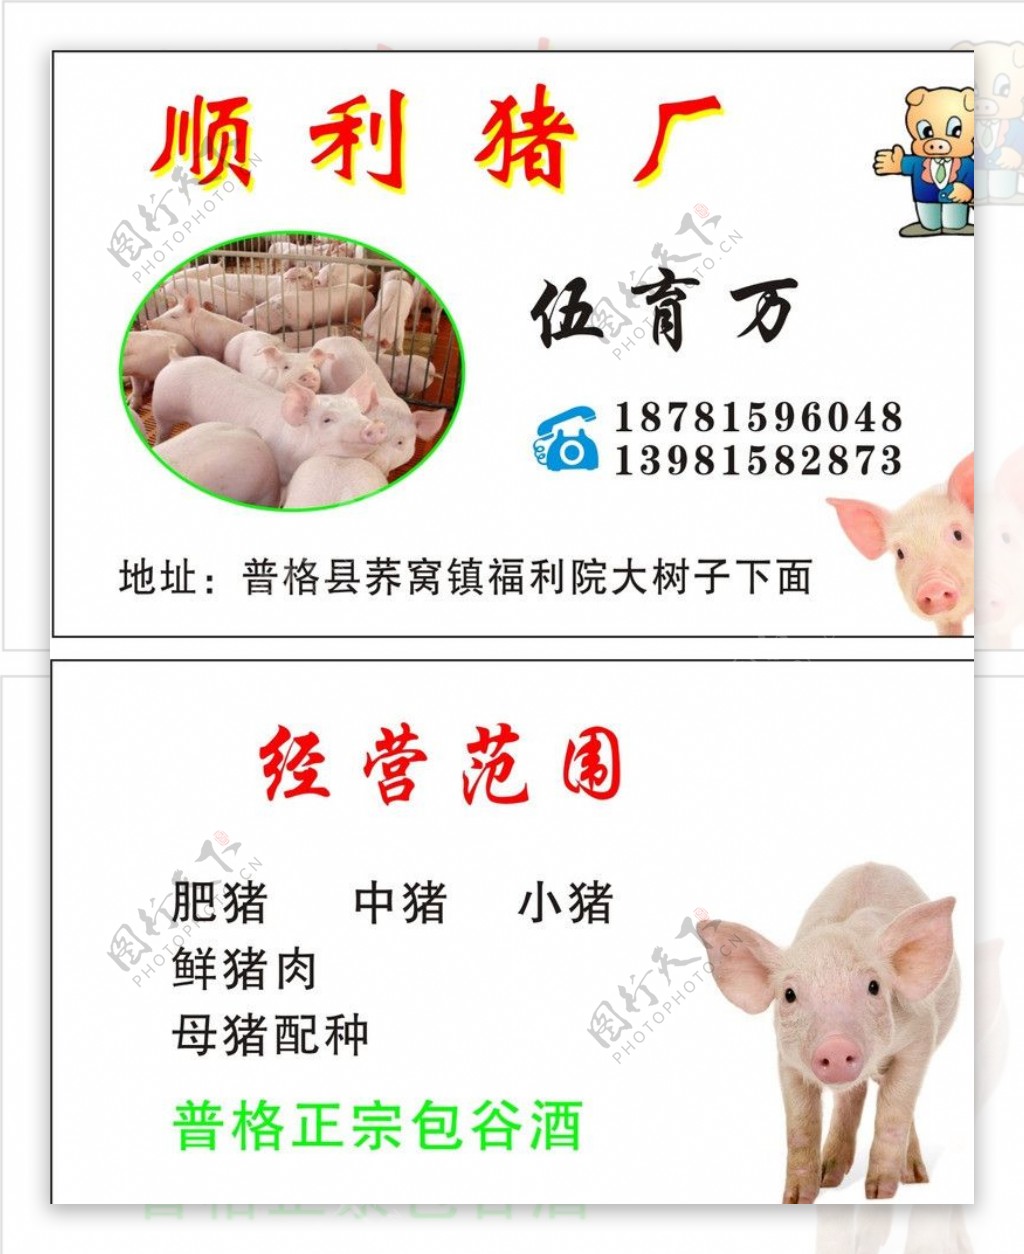 养猪厂名片图片